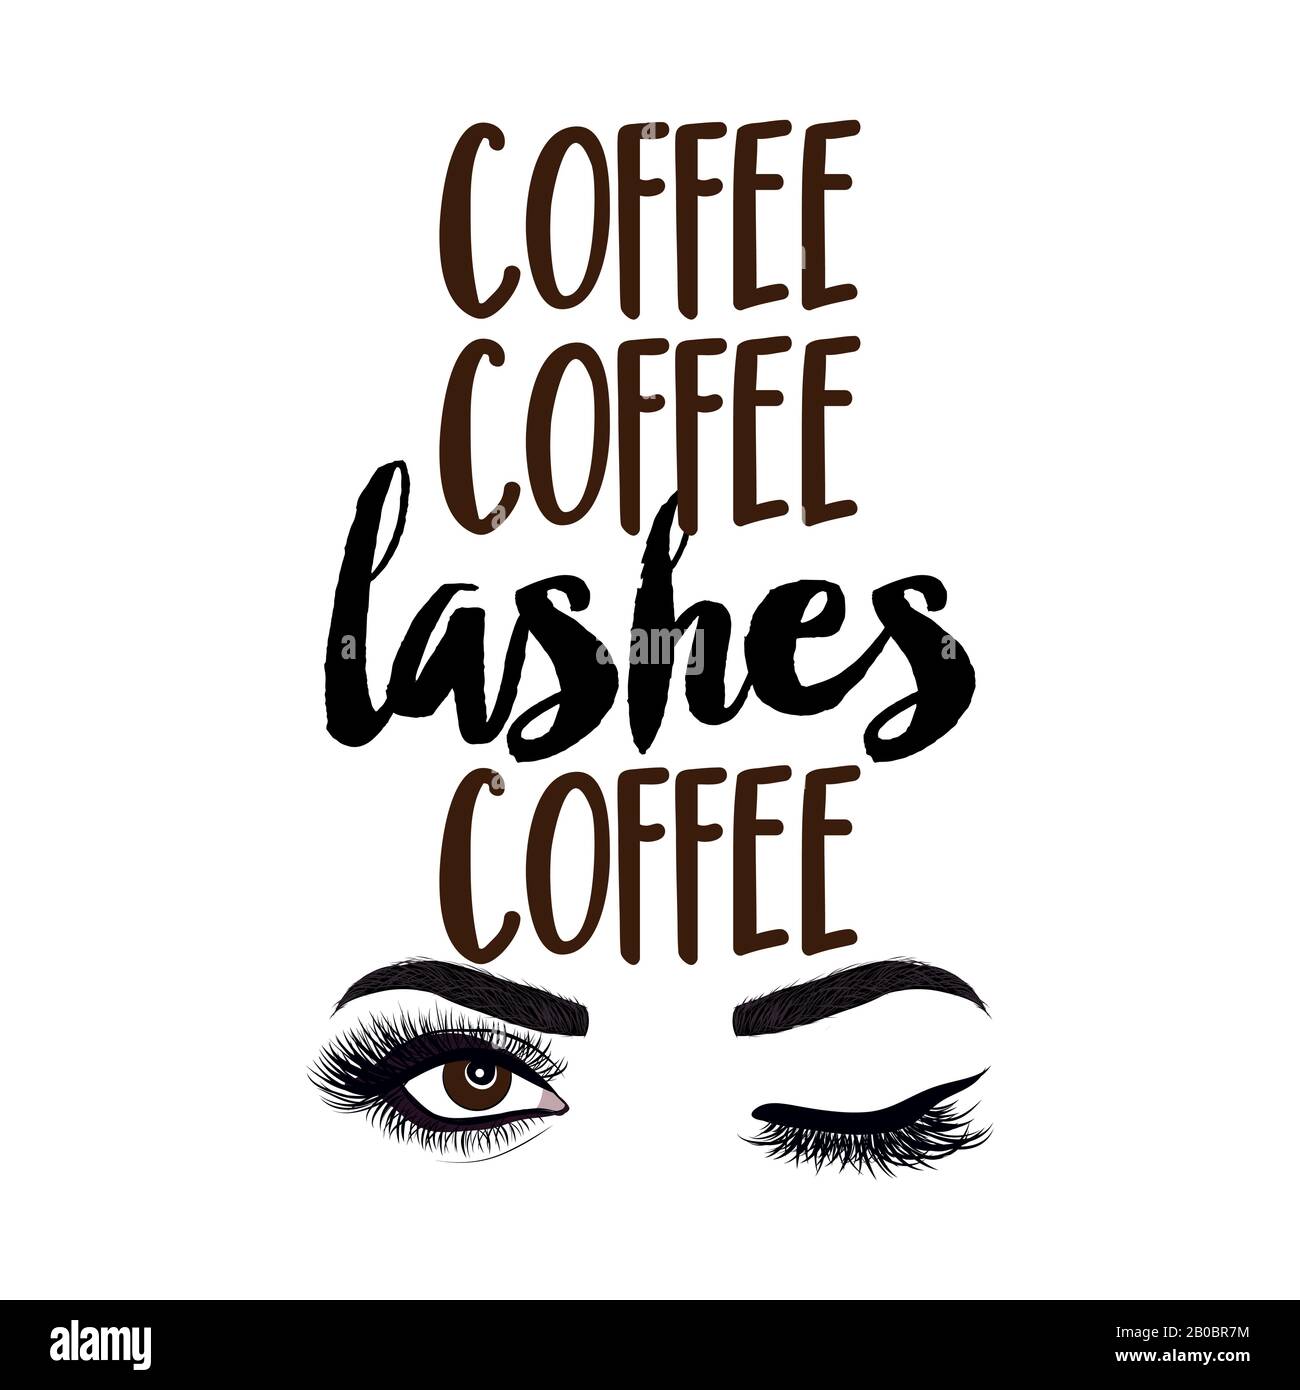 Caffè caffè caffè Lashes caffè - bella citazione tipografica con ciglia in  vettore eps. Ideale per il salone di trucco, logo, post sui social media,  t-shirt, tazza, scr Immagine e Vettoriale -